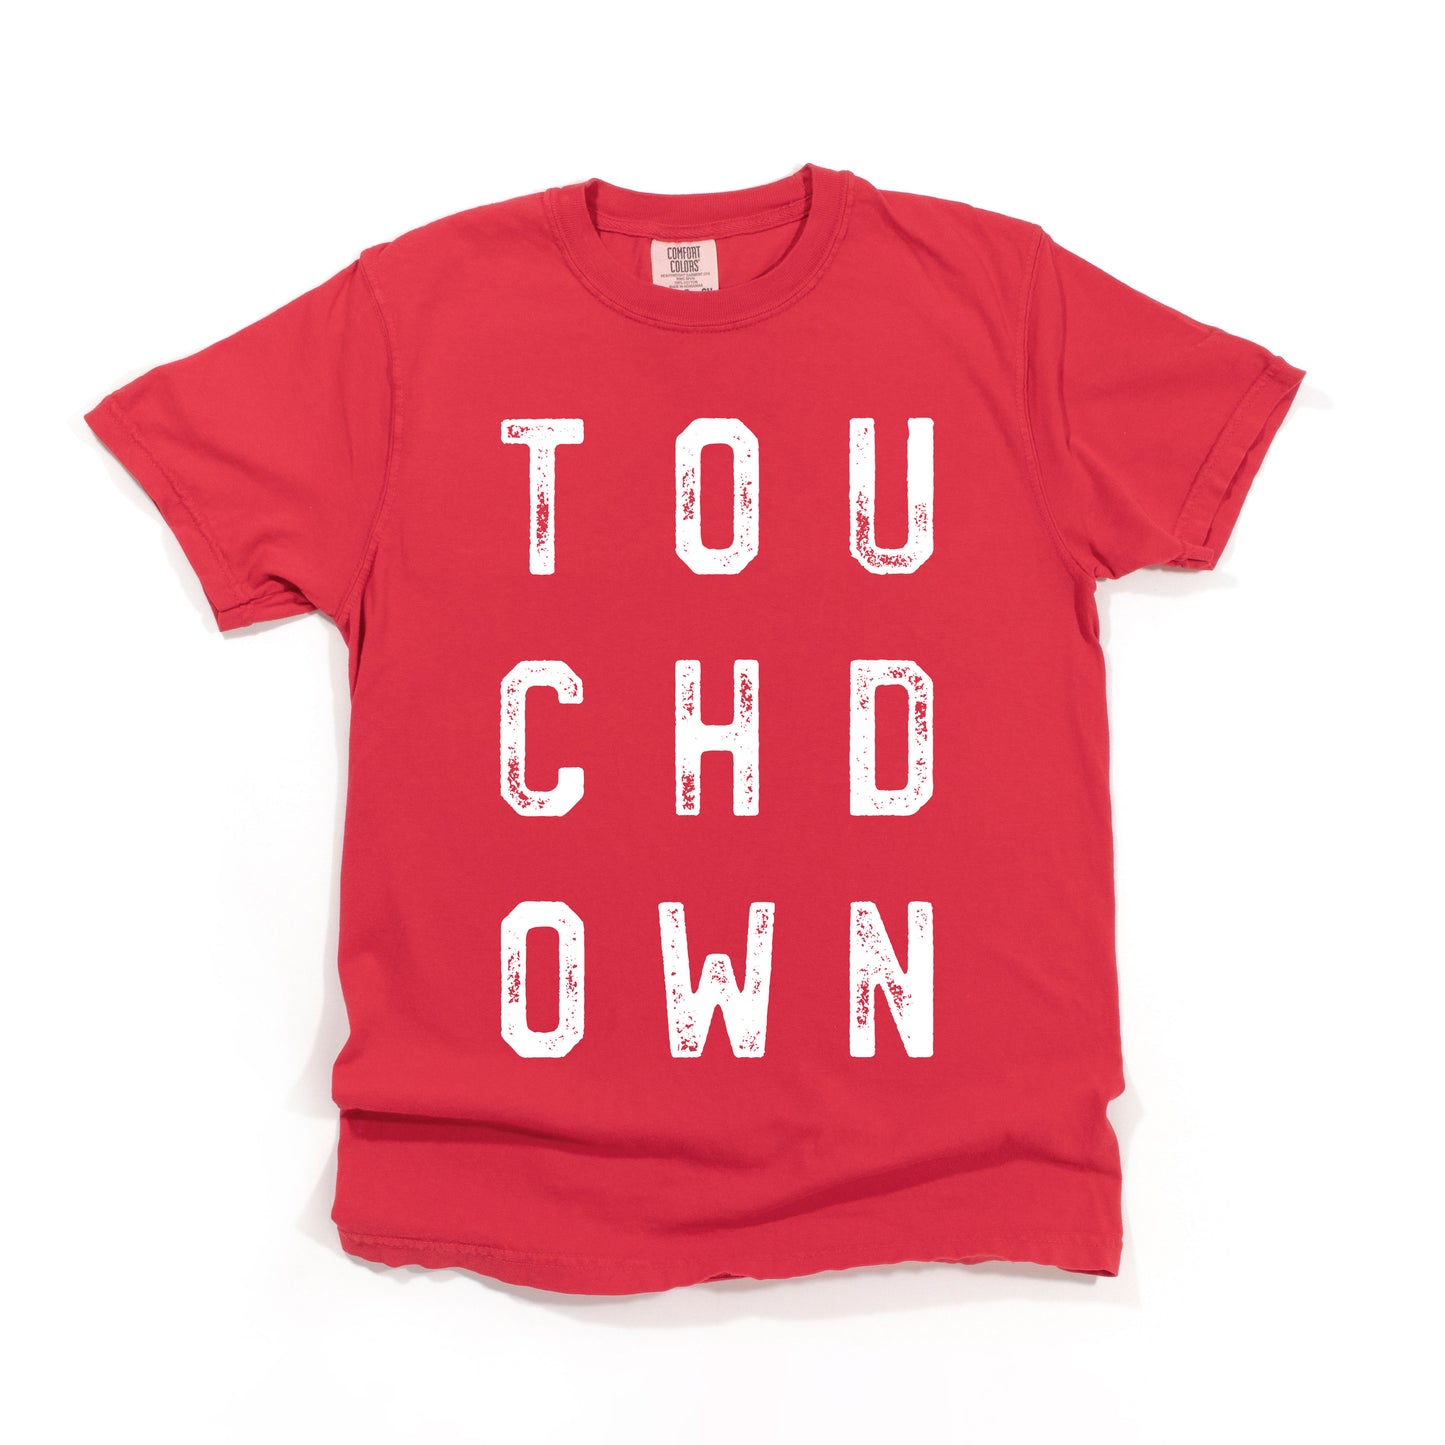 Touchdown | Garment Dyed Short Sleeve Tee